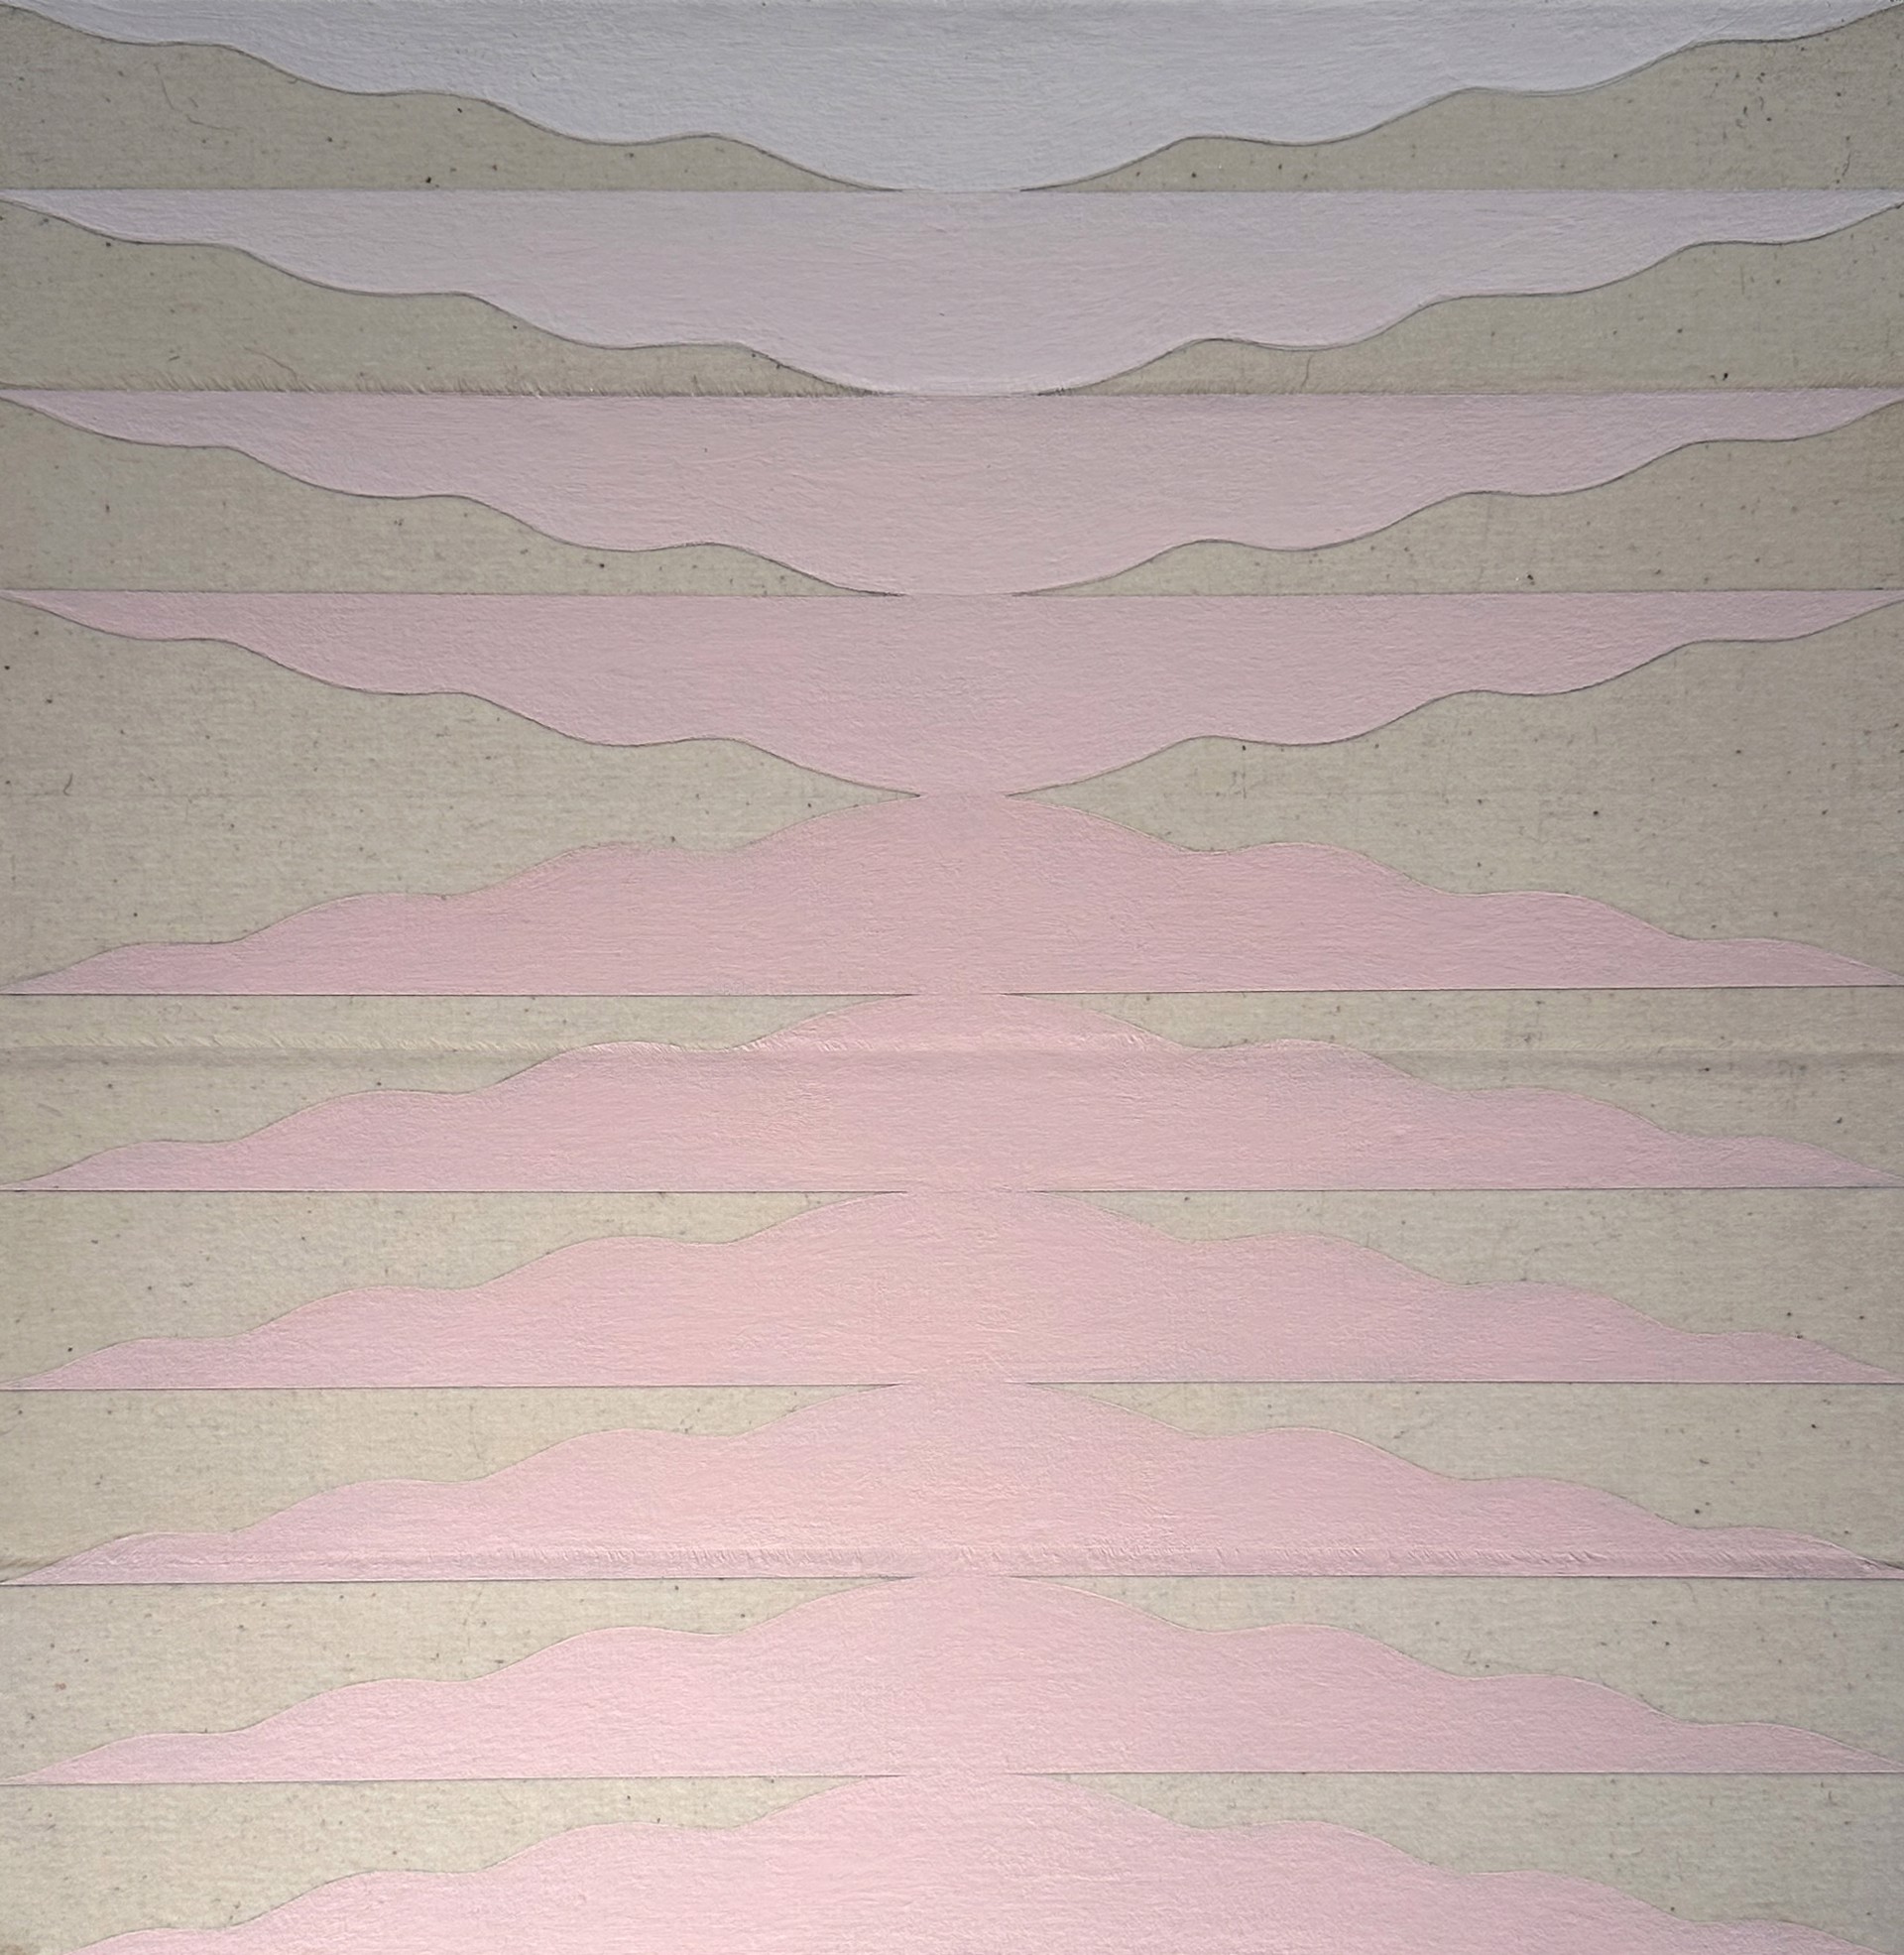 10 Clouds (Pink Fade) by Matt Messinger